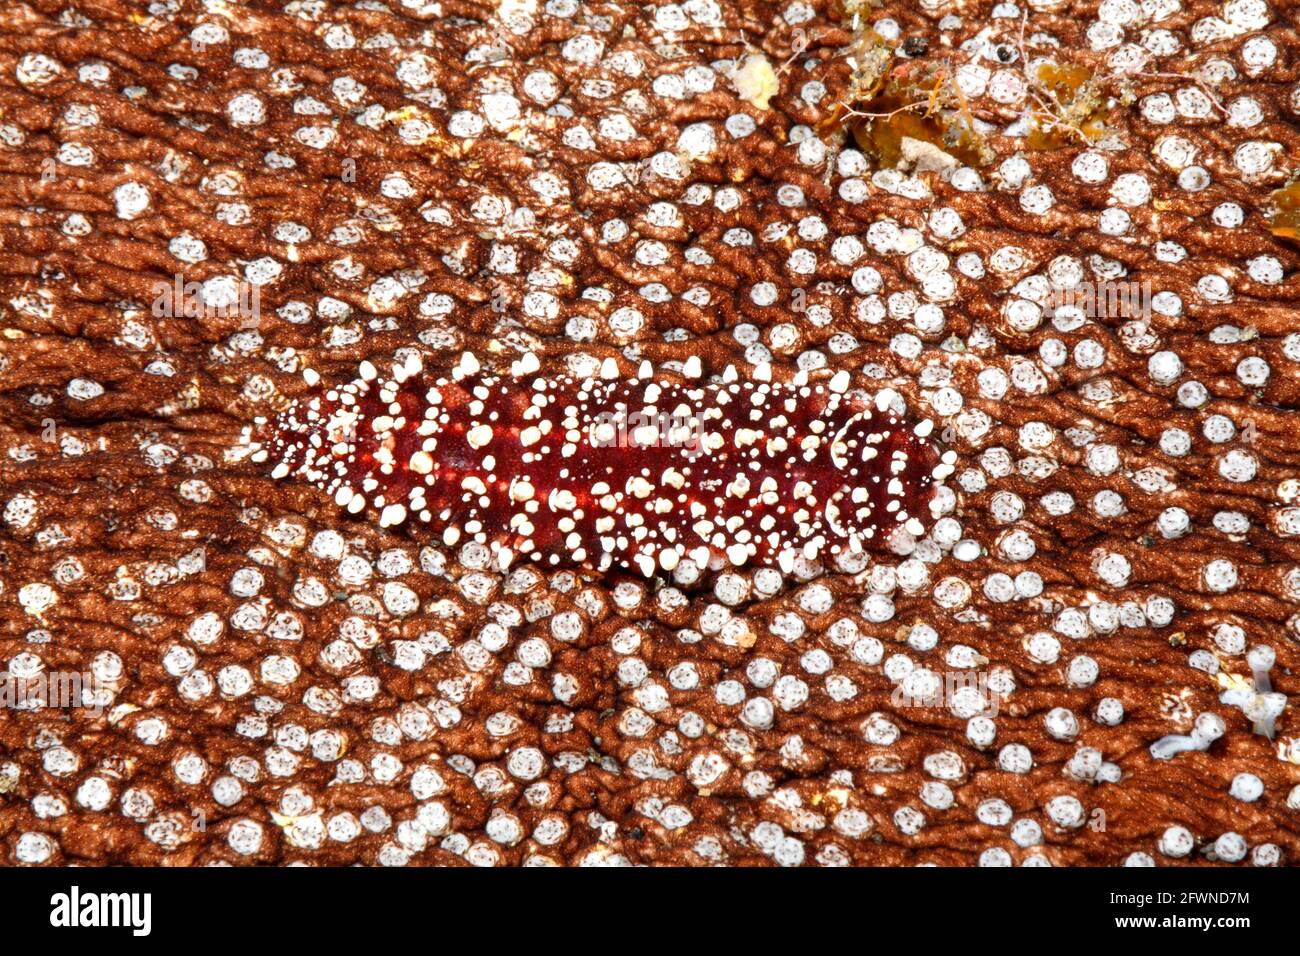 Gusano de escala polinoidea, carlae de astofilia, viviendo debajo de un pepino marino. Tulamben, Bali, Indonesia. Mar de Bali, Océano Índico Foto de stock